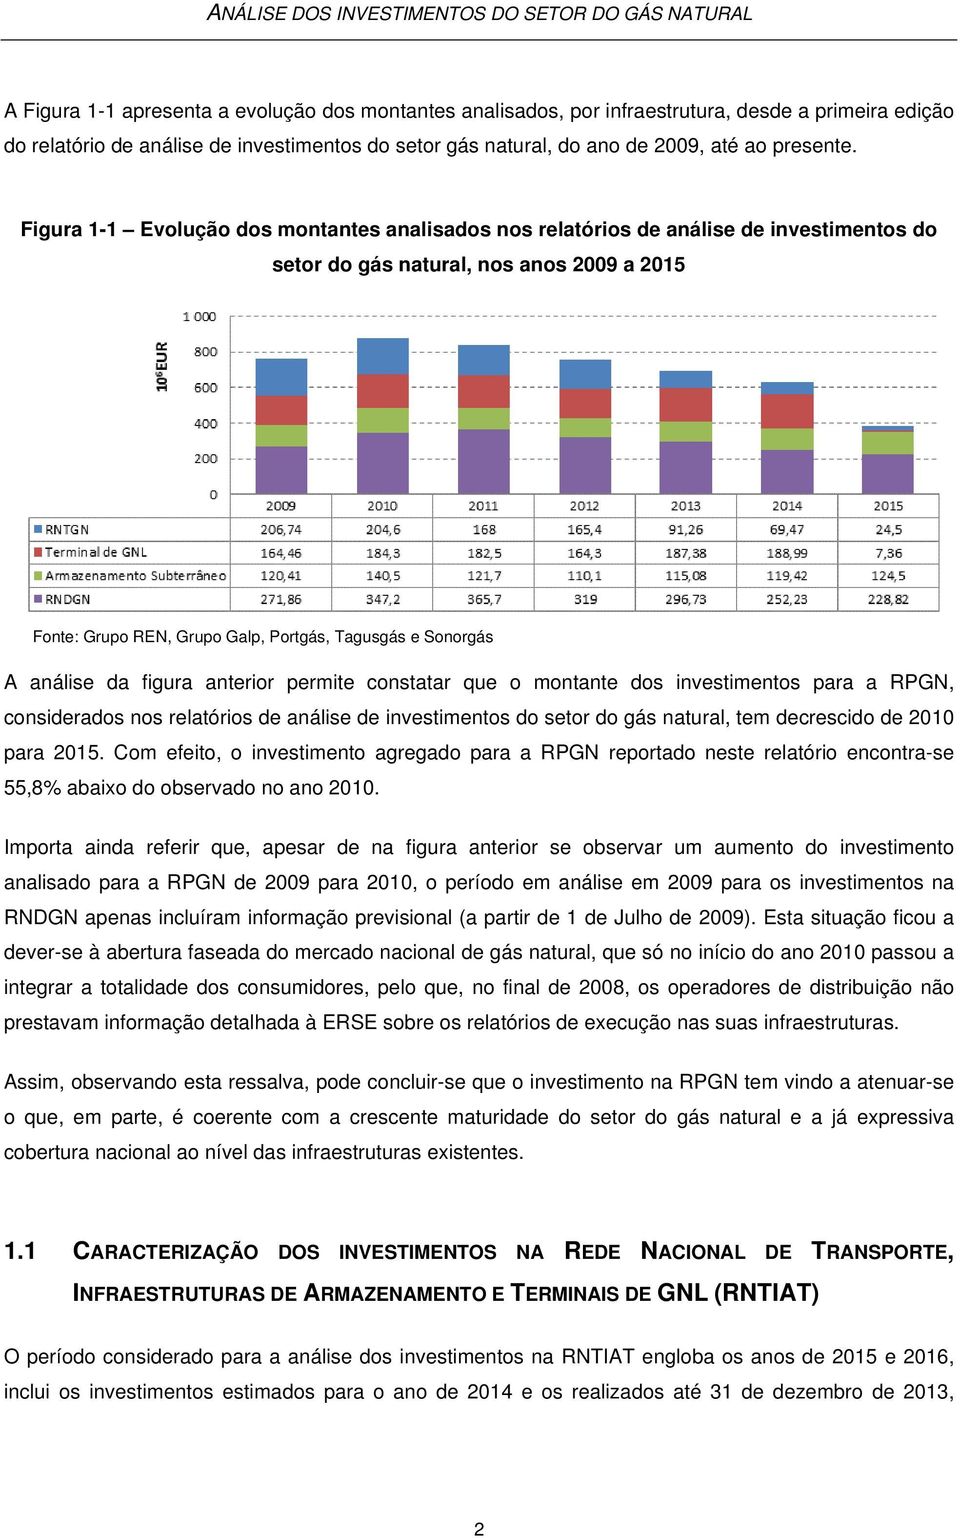 análise da figura anterior permite constatar que o montante dos investimentos para a RPGN, considerados nos relatórios de análise de investimentos do setor do gás natural, tem decrescido de 2010 para